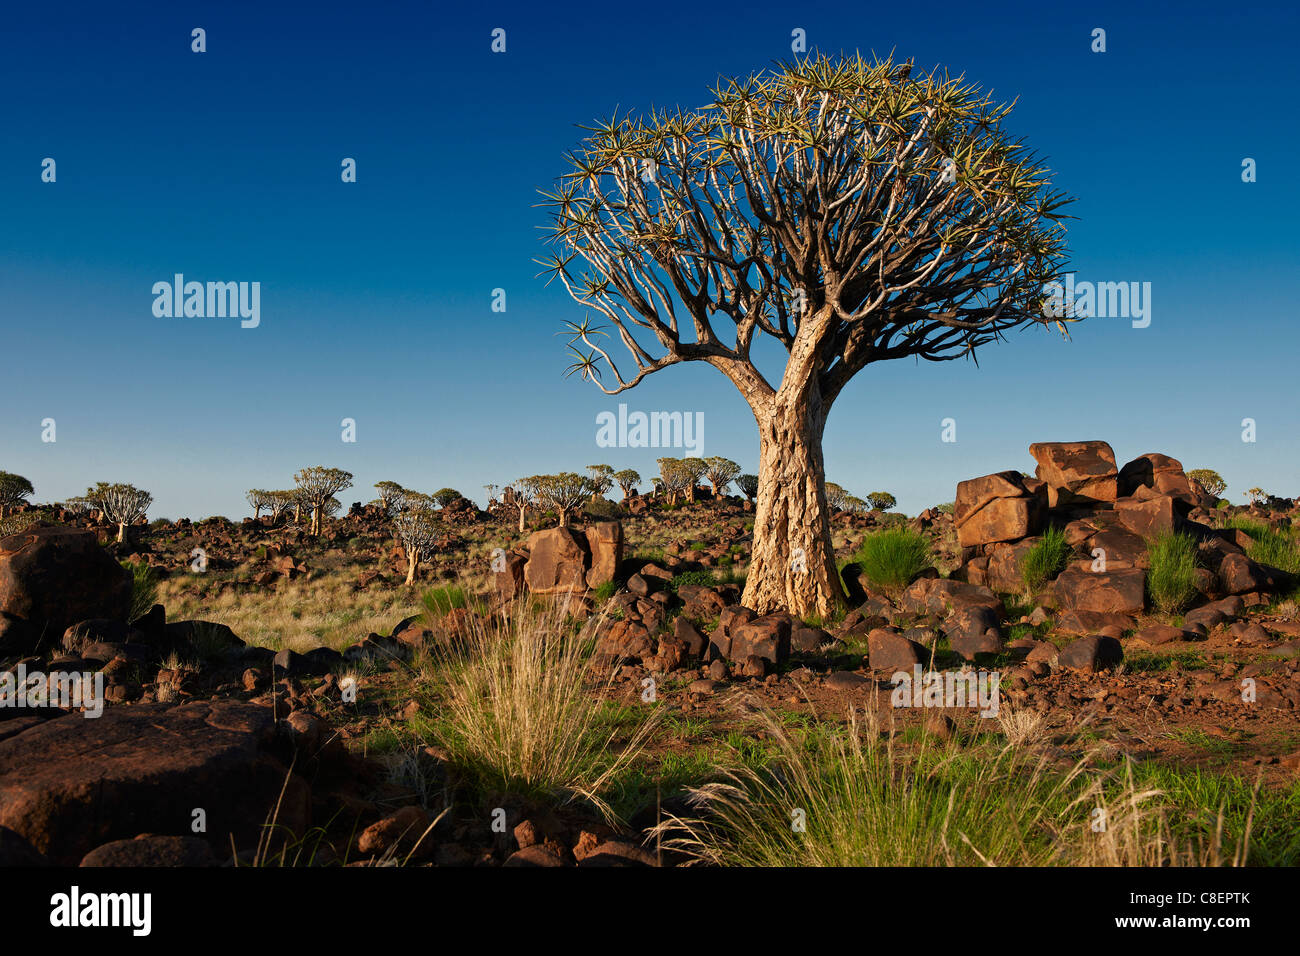 Quiver Tree Forest, L'Aloe dichotoma, ferme Garas, Mesosaurus Fossil Site, Keetmanshoop, Namibie, Afrique Banque D'Images